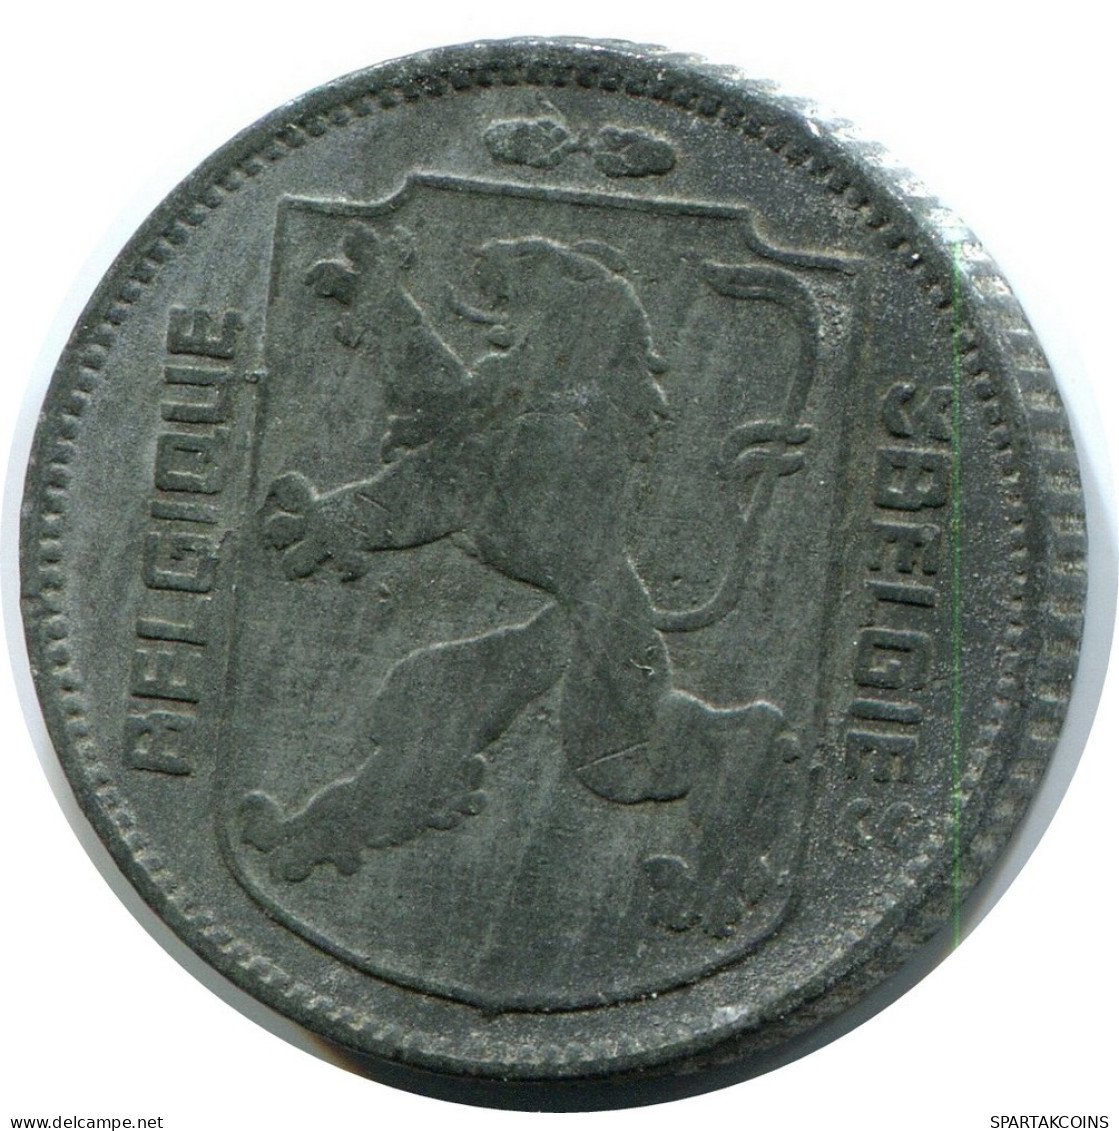 1 FRANC 1944 BELGIQUE-BELGIE BÉLGICA BELGIUM Moneda #AW915.E.A - 1 Franc